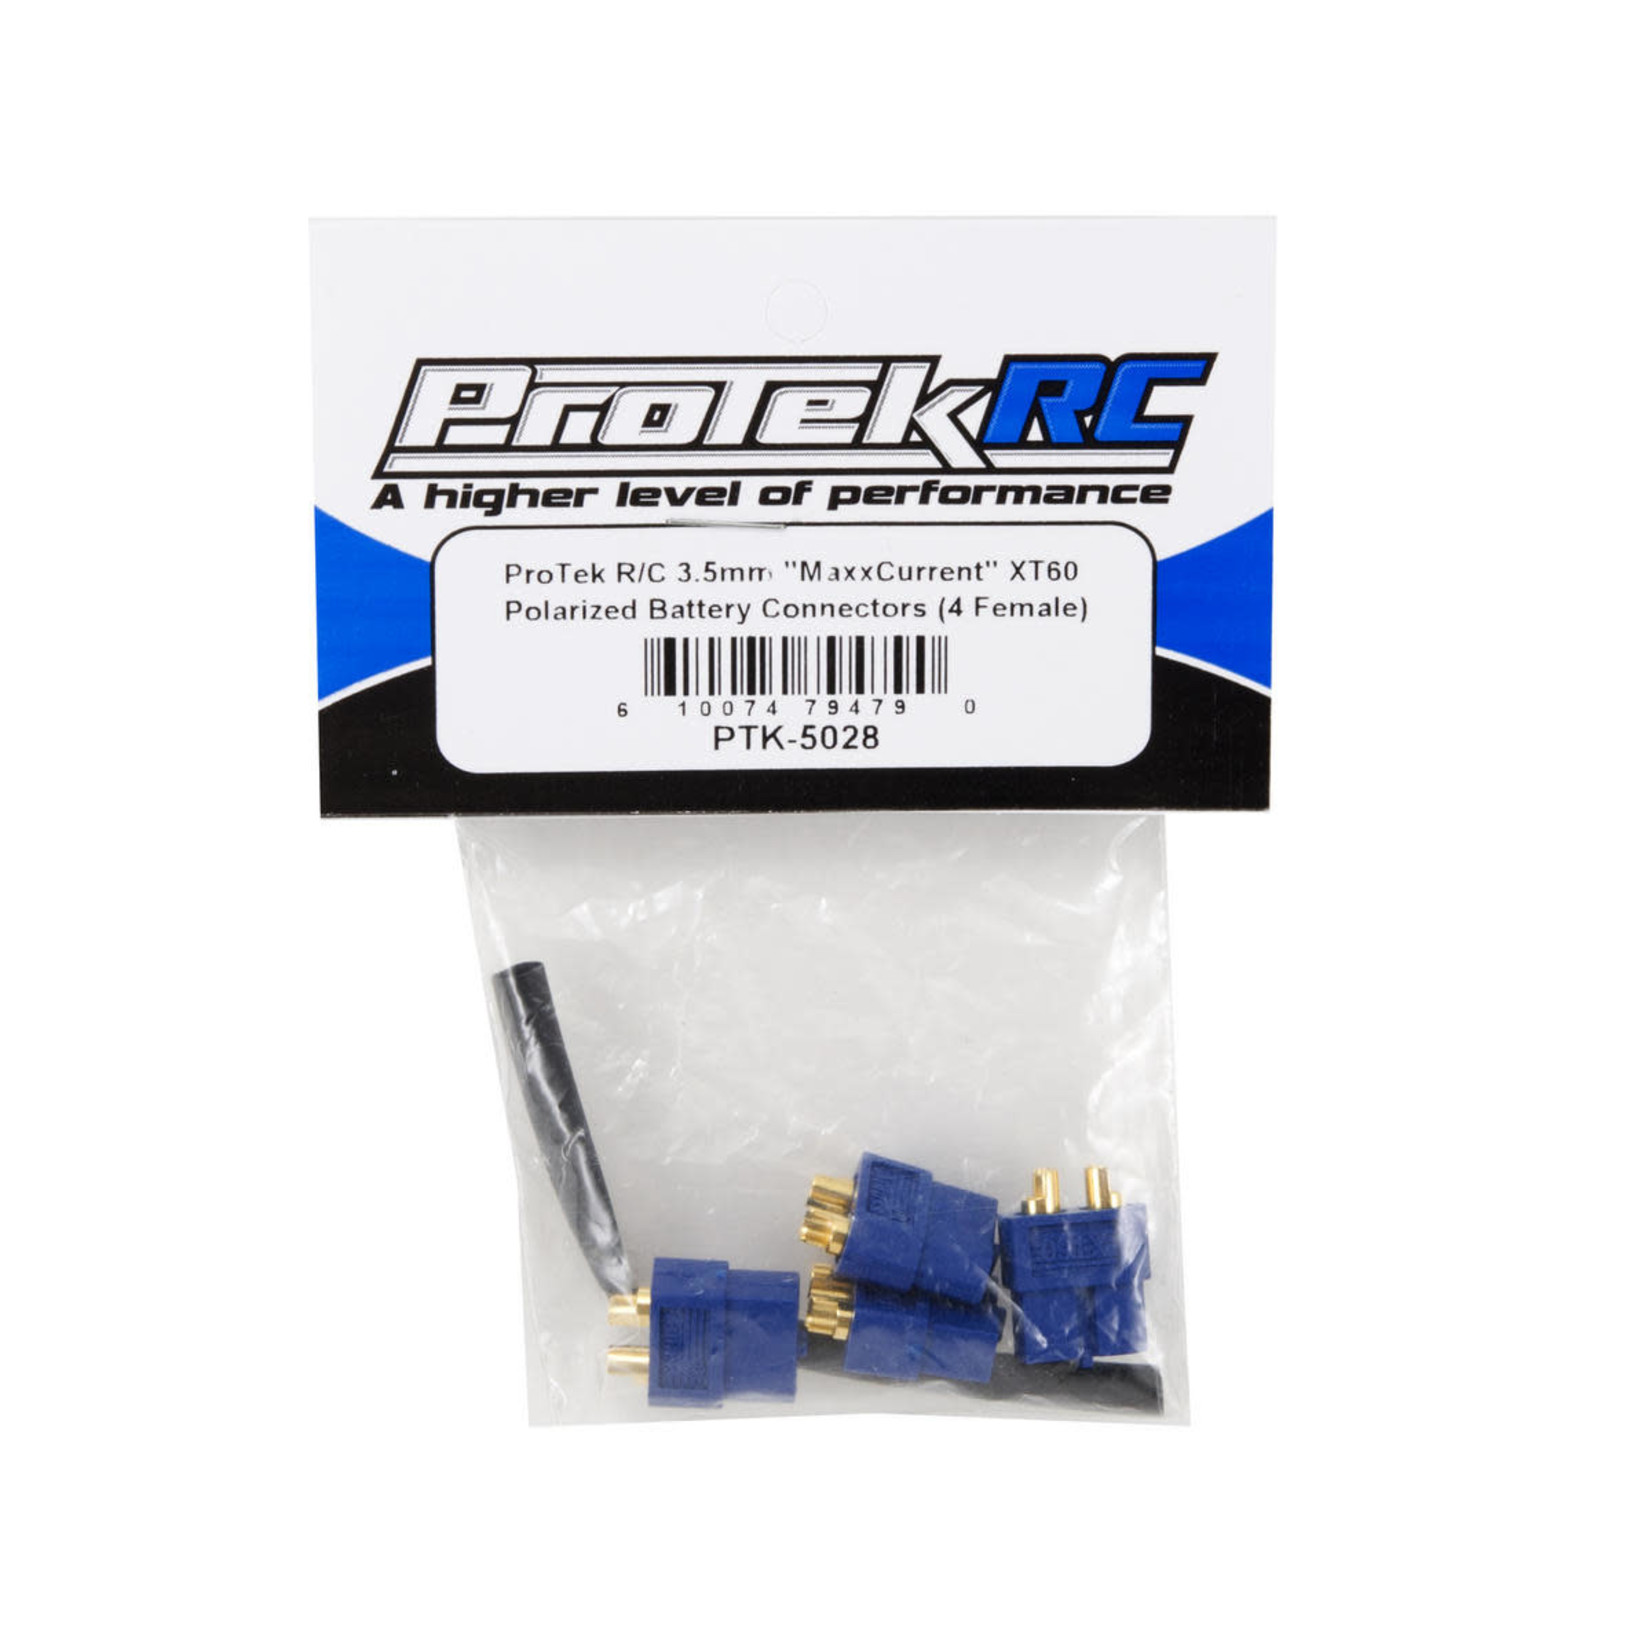 ProTek RC ProTek RC 3.5mm "TruCurrent" XT60 Polarized Battery Connectors (4 Female) #PTK-5028